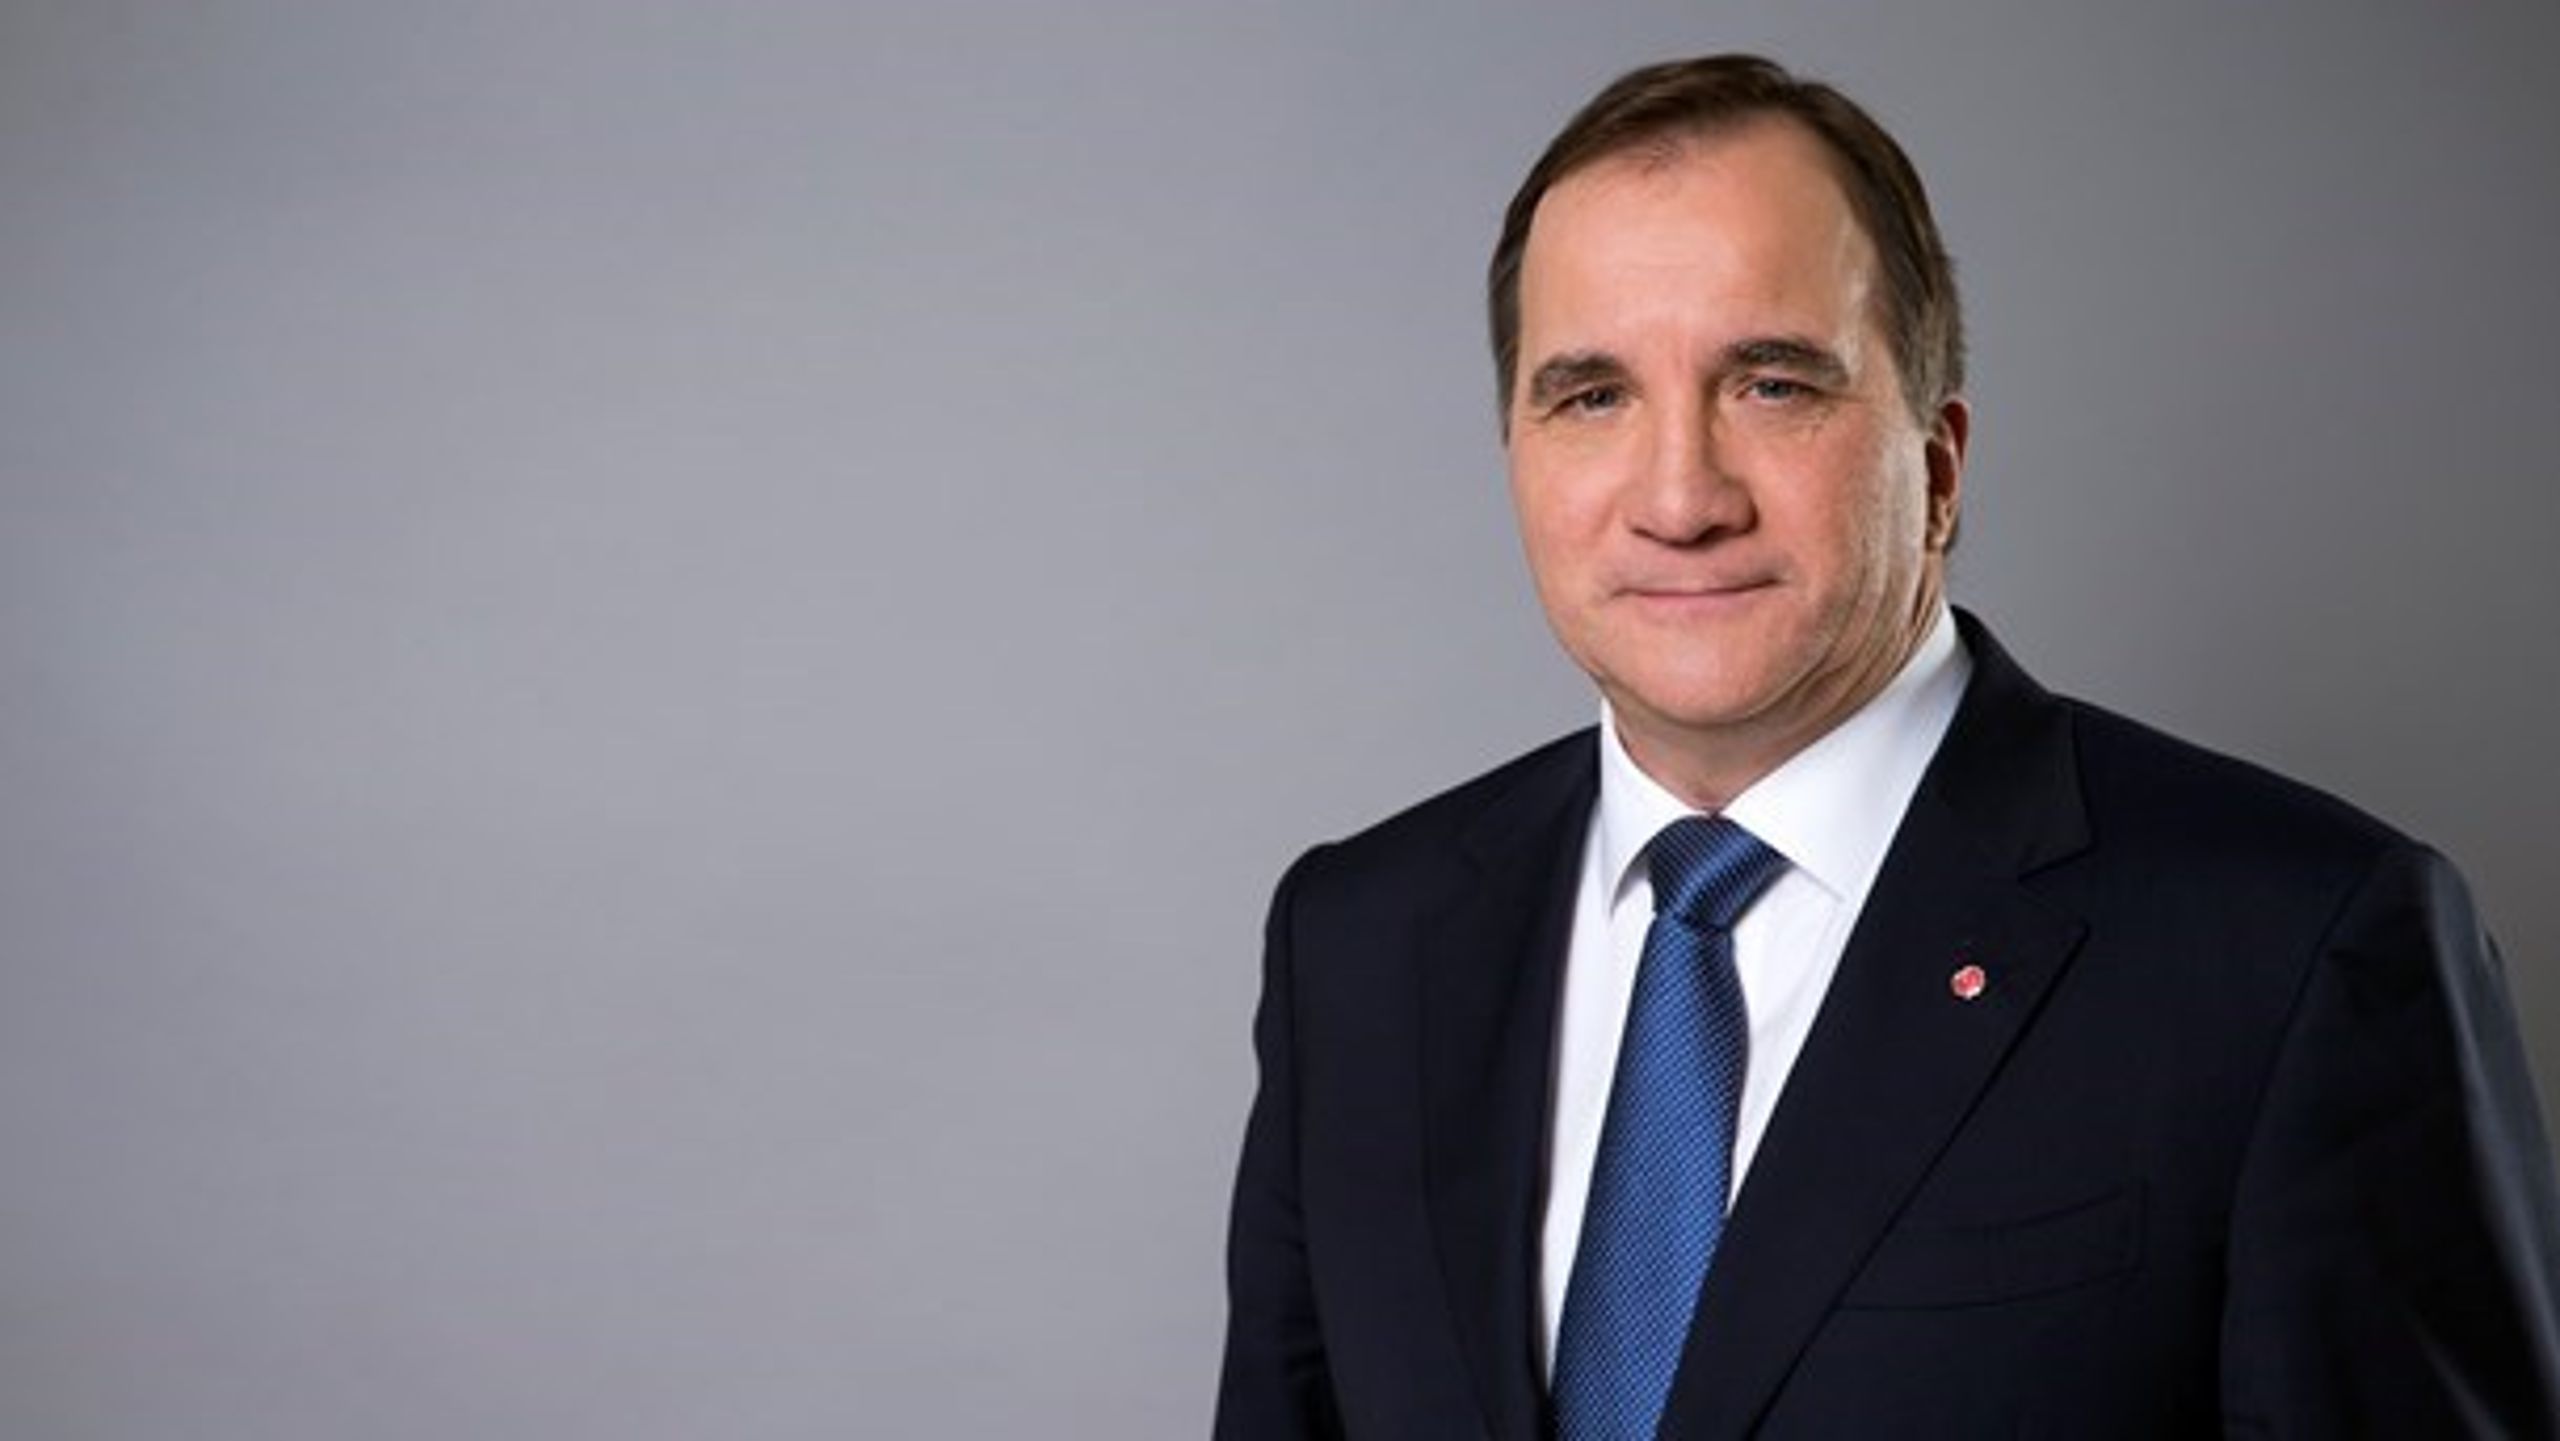 Stefan Löfven (S) er efter fredagens afstemning i Riksdagen Sveriges statsminister. På mandag skal han præsentere sin nye regering.